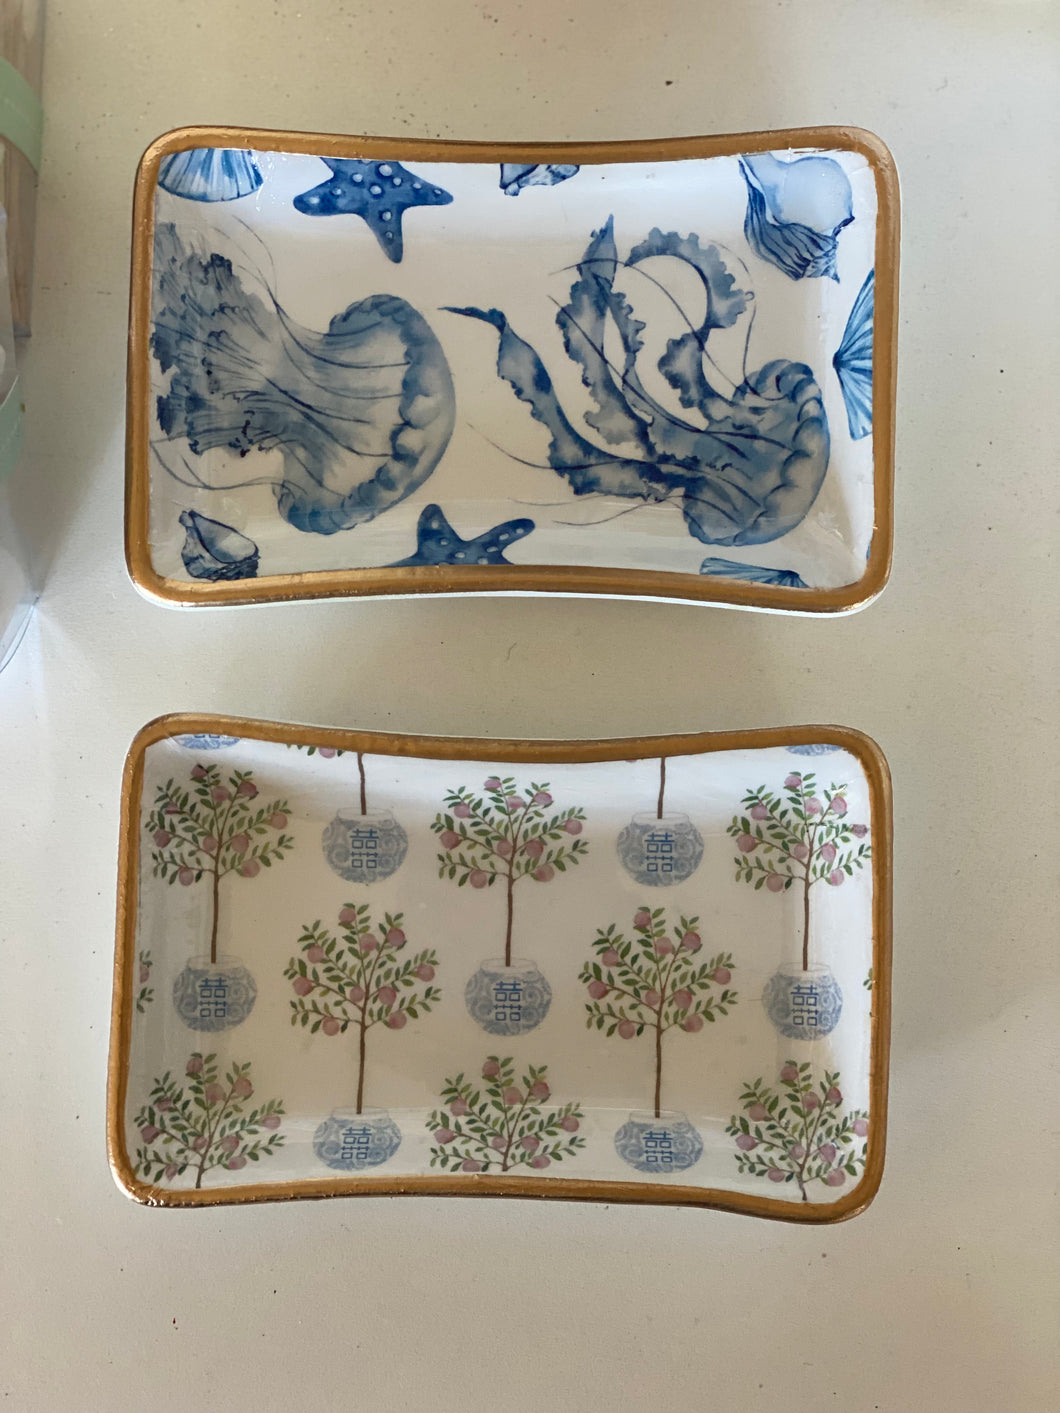 Ceramic Soap/Jewelry tray- Small